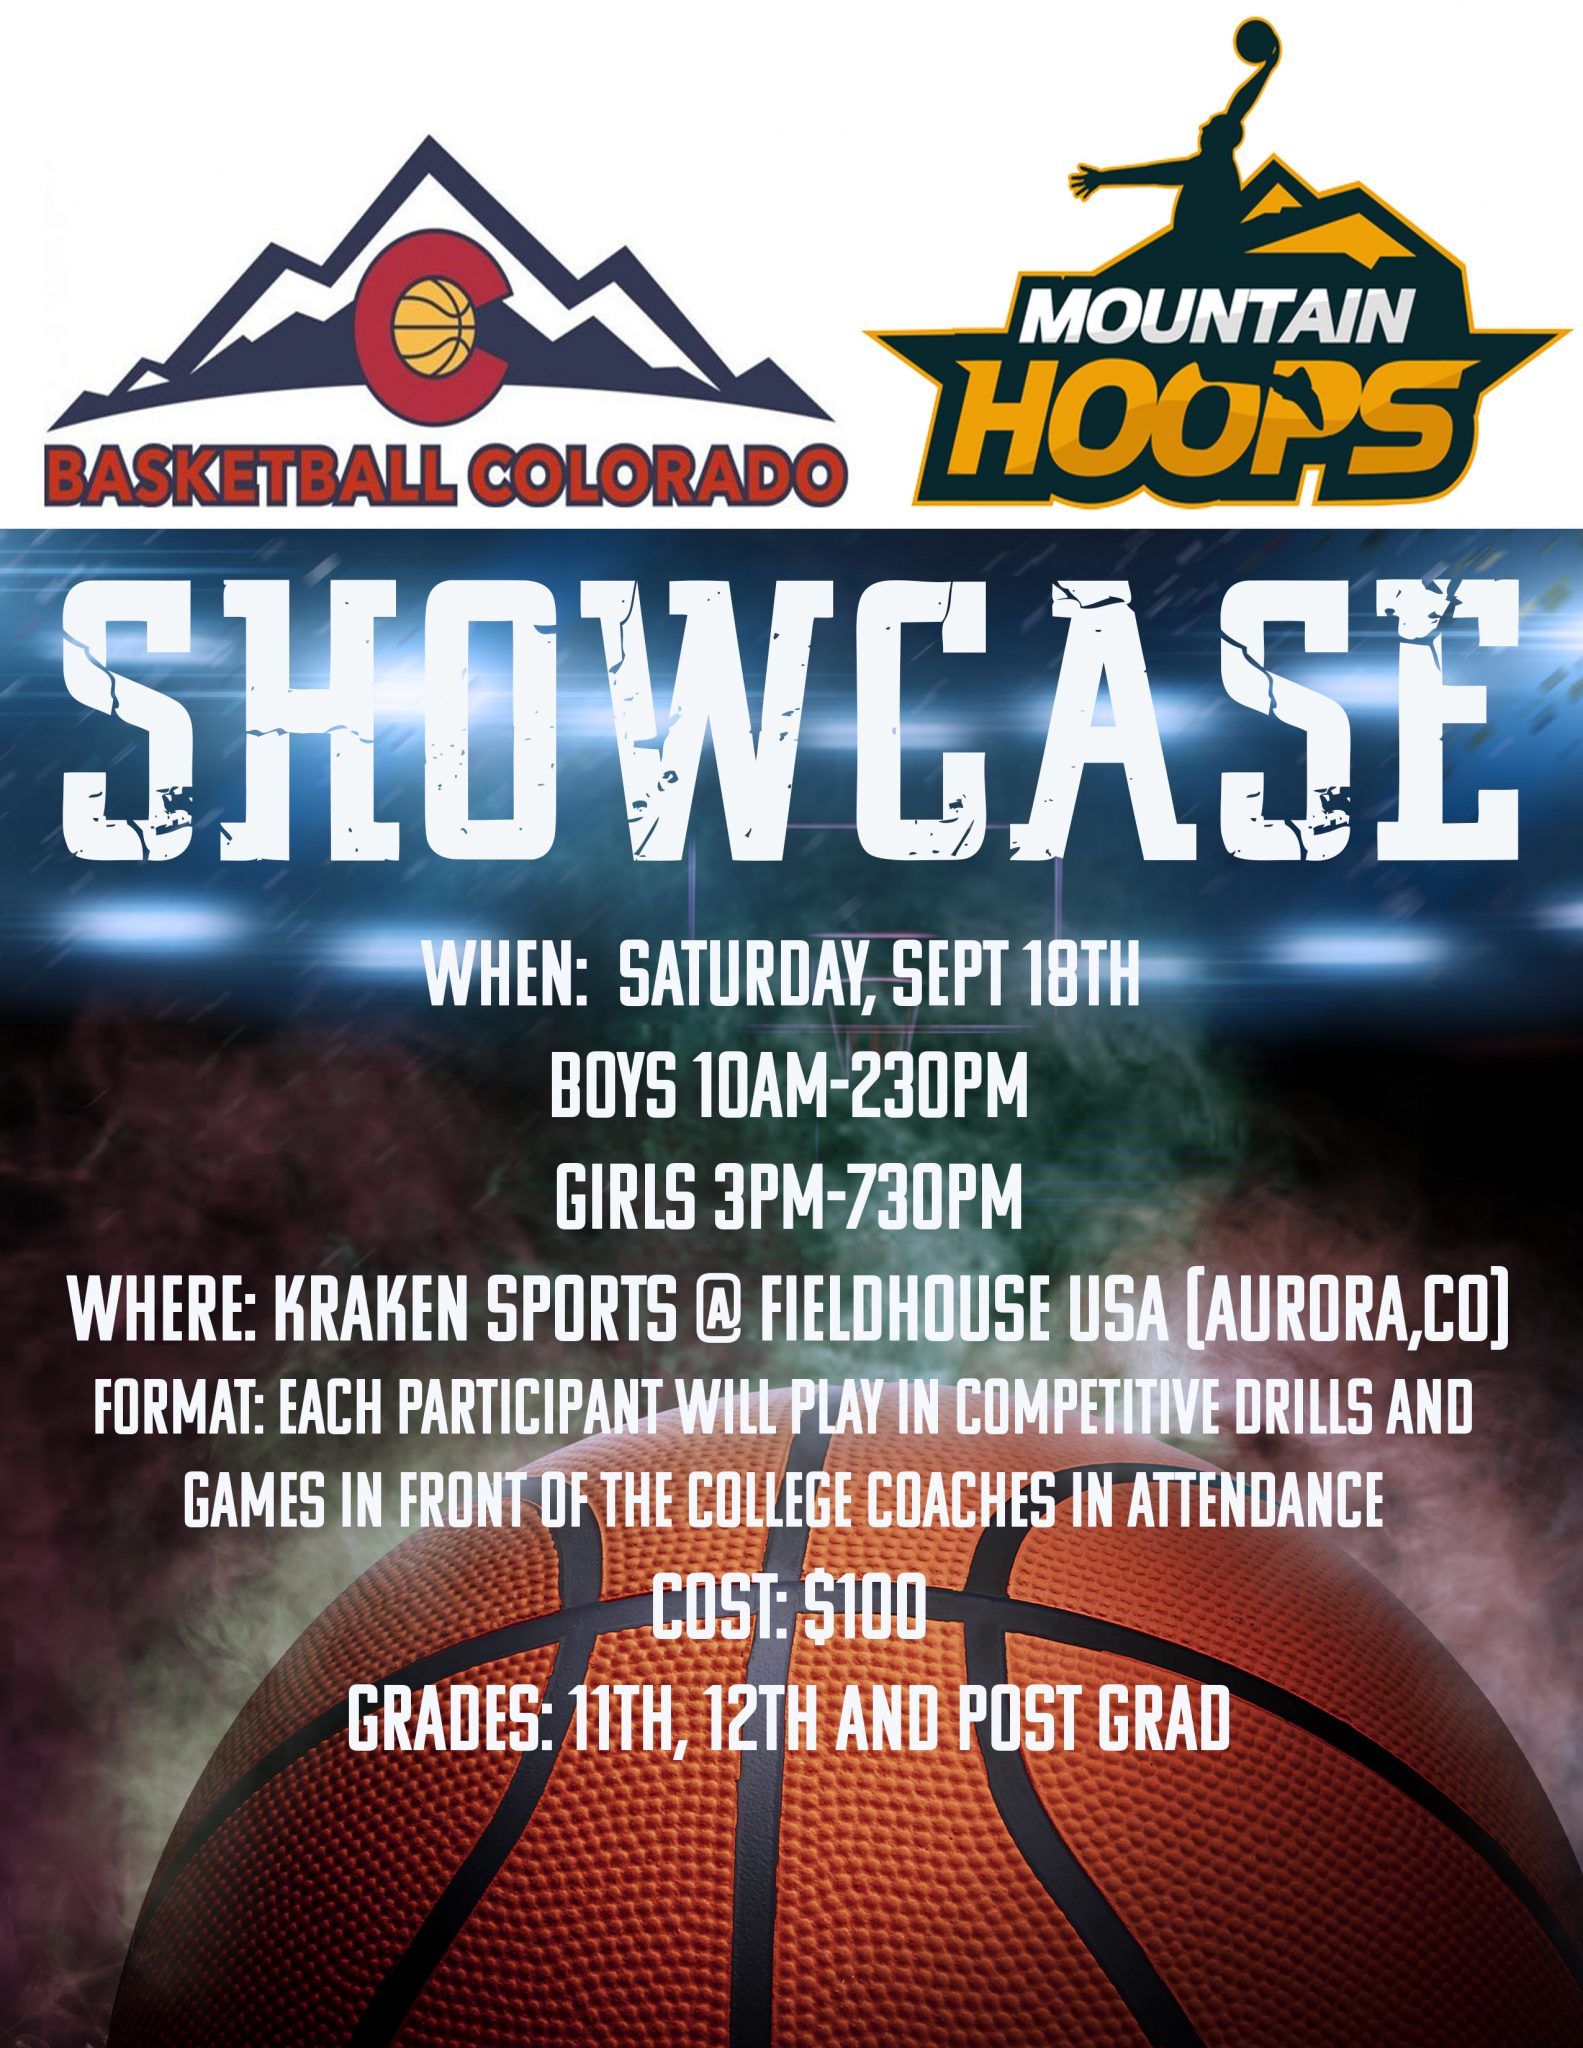 Basketball Colorado Mountain Hoops Fall Showcase Announced